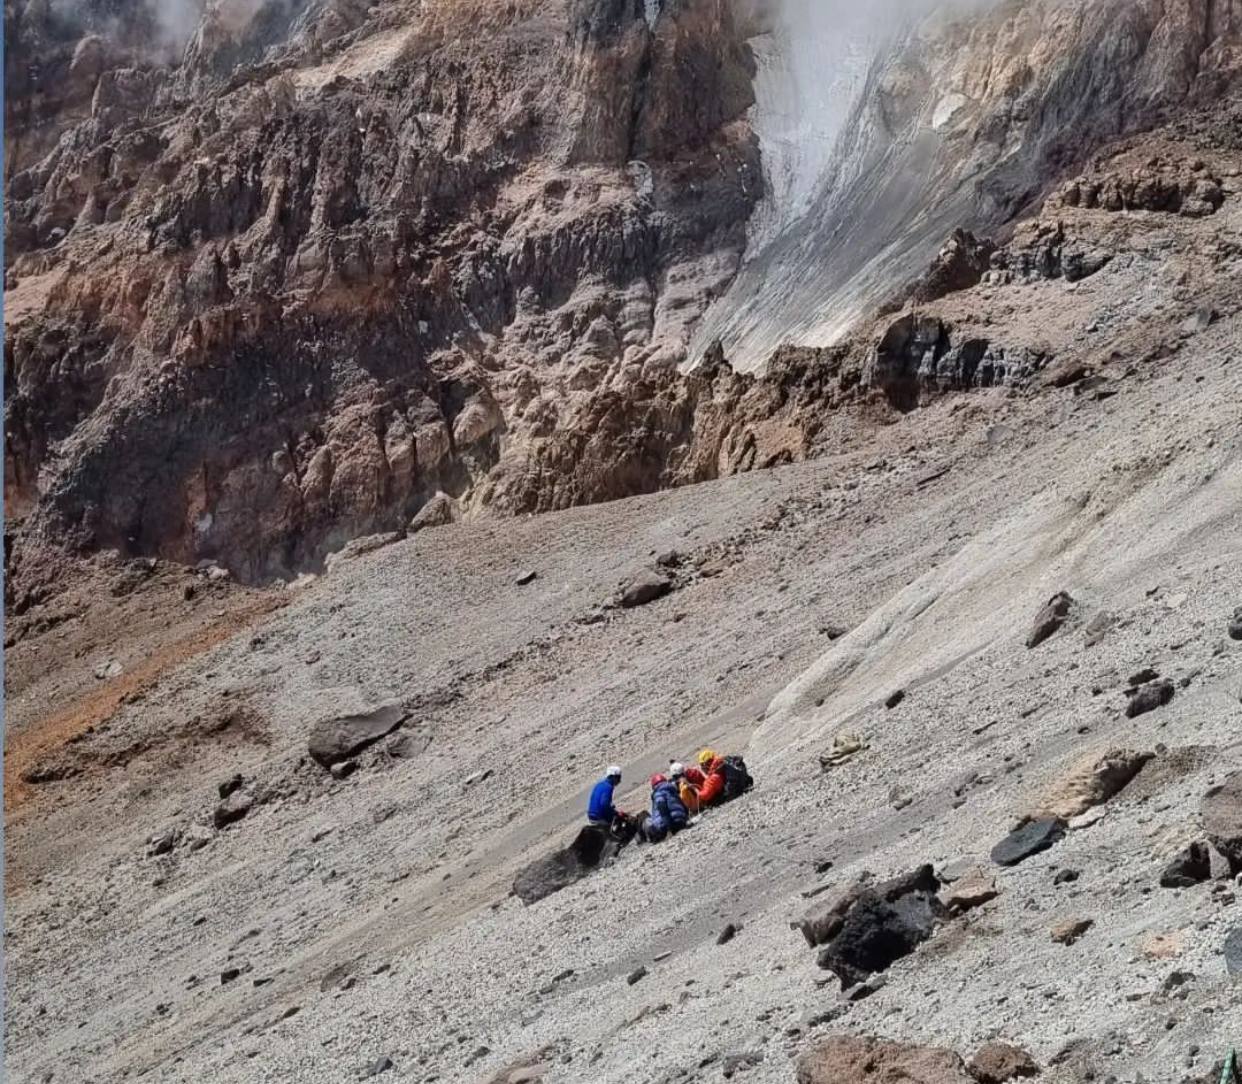 مرگ تلخ یک کوهنورد در علم کوه ! + عکس مهدی شایگان و عکس های محل حادثه 